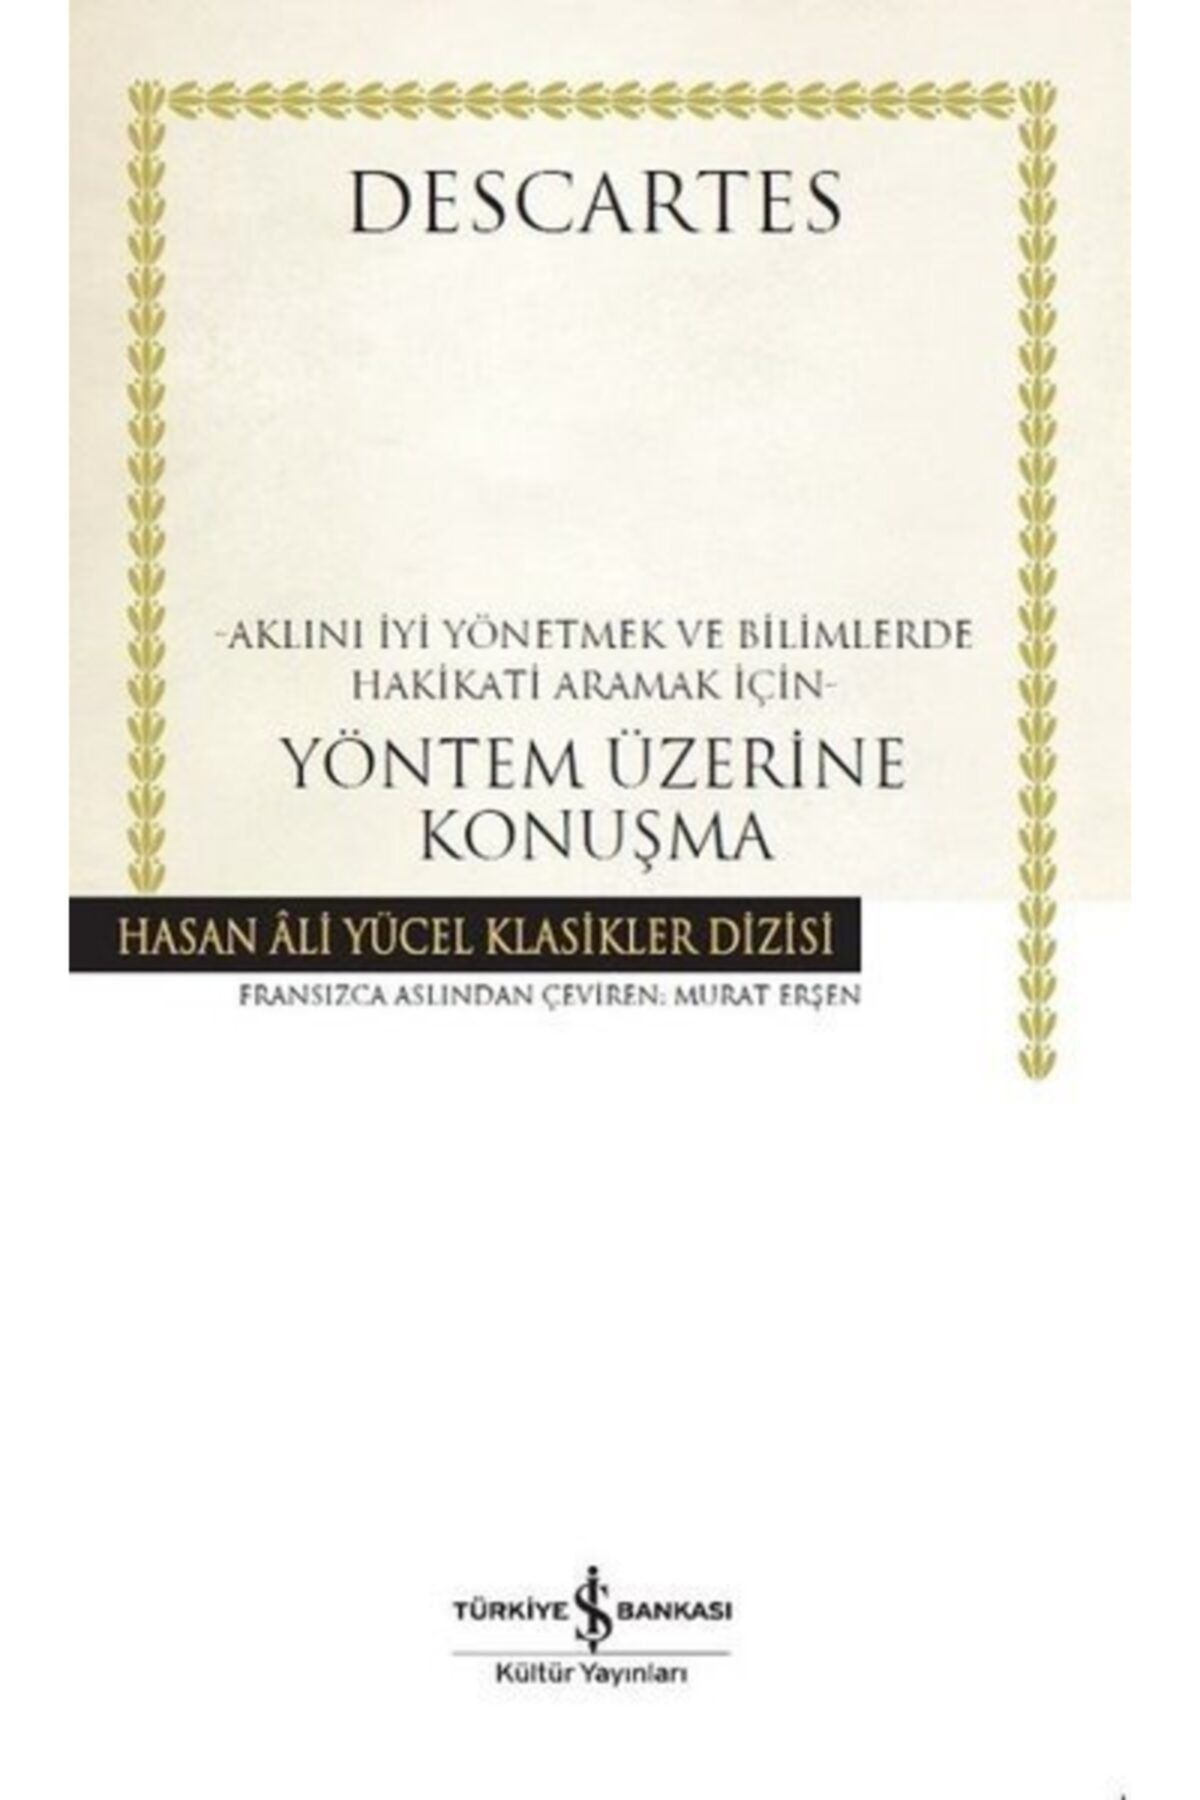 Türkiye İş Bankası Kültür Yayınları Yöntem Üzerine Konuşma Hasan Ali Yücel Klasikler - Descartes